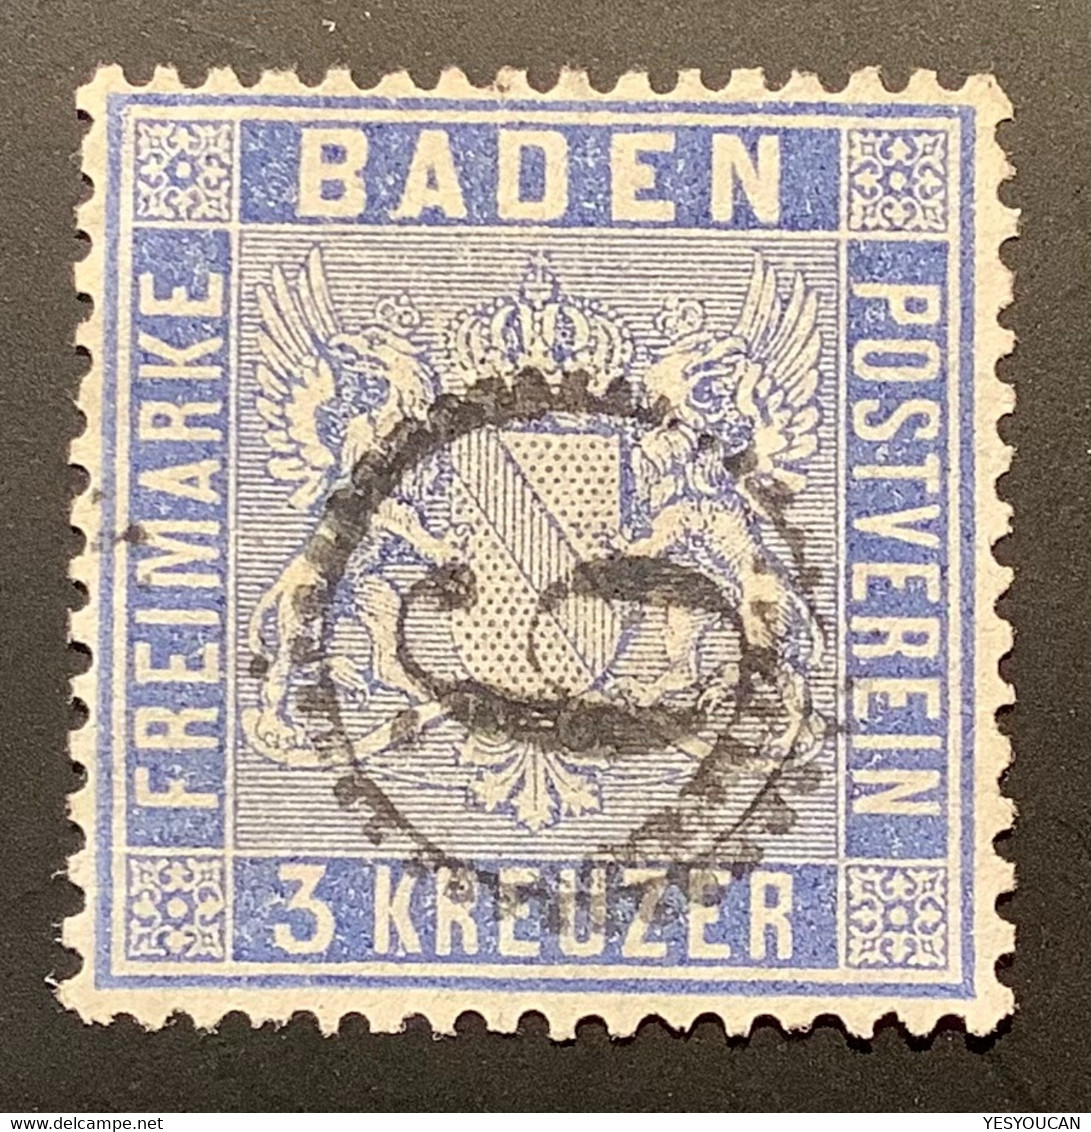 Baden Mi 10 C DIE GUTE FARBE Geprüft Stegmüller BPP 1860 3 Kr VEILCHENBLAU Gestempelt UHRRADSTEMPEL 9  (Bade - Used